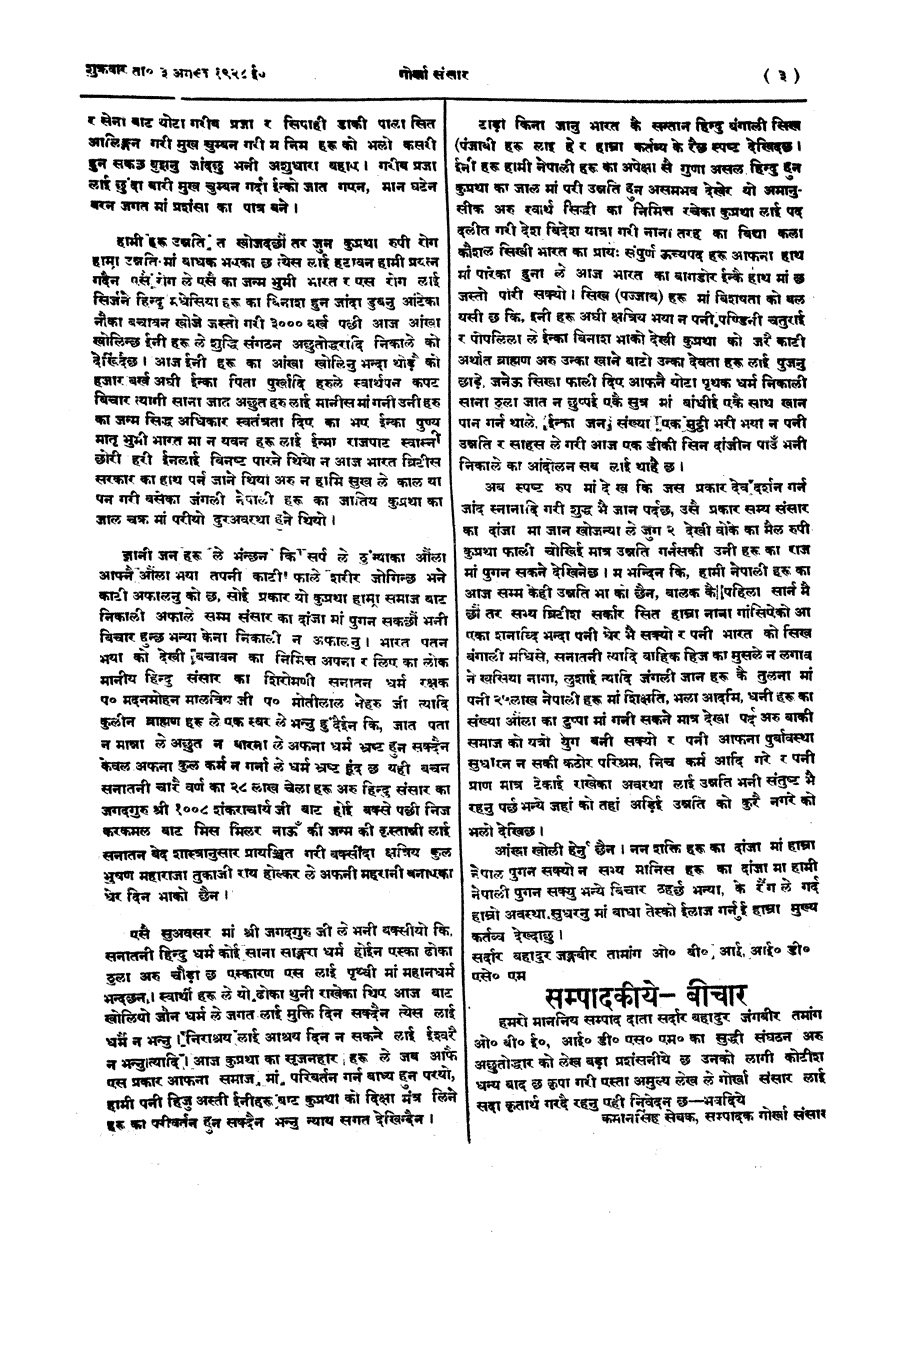 Gorkha Sansar, 3 Aug 1928, page 3